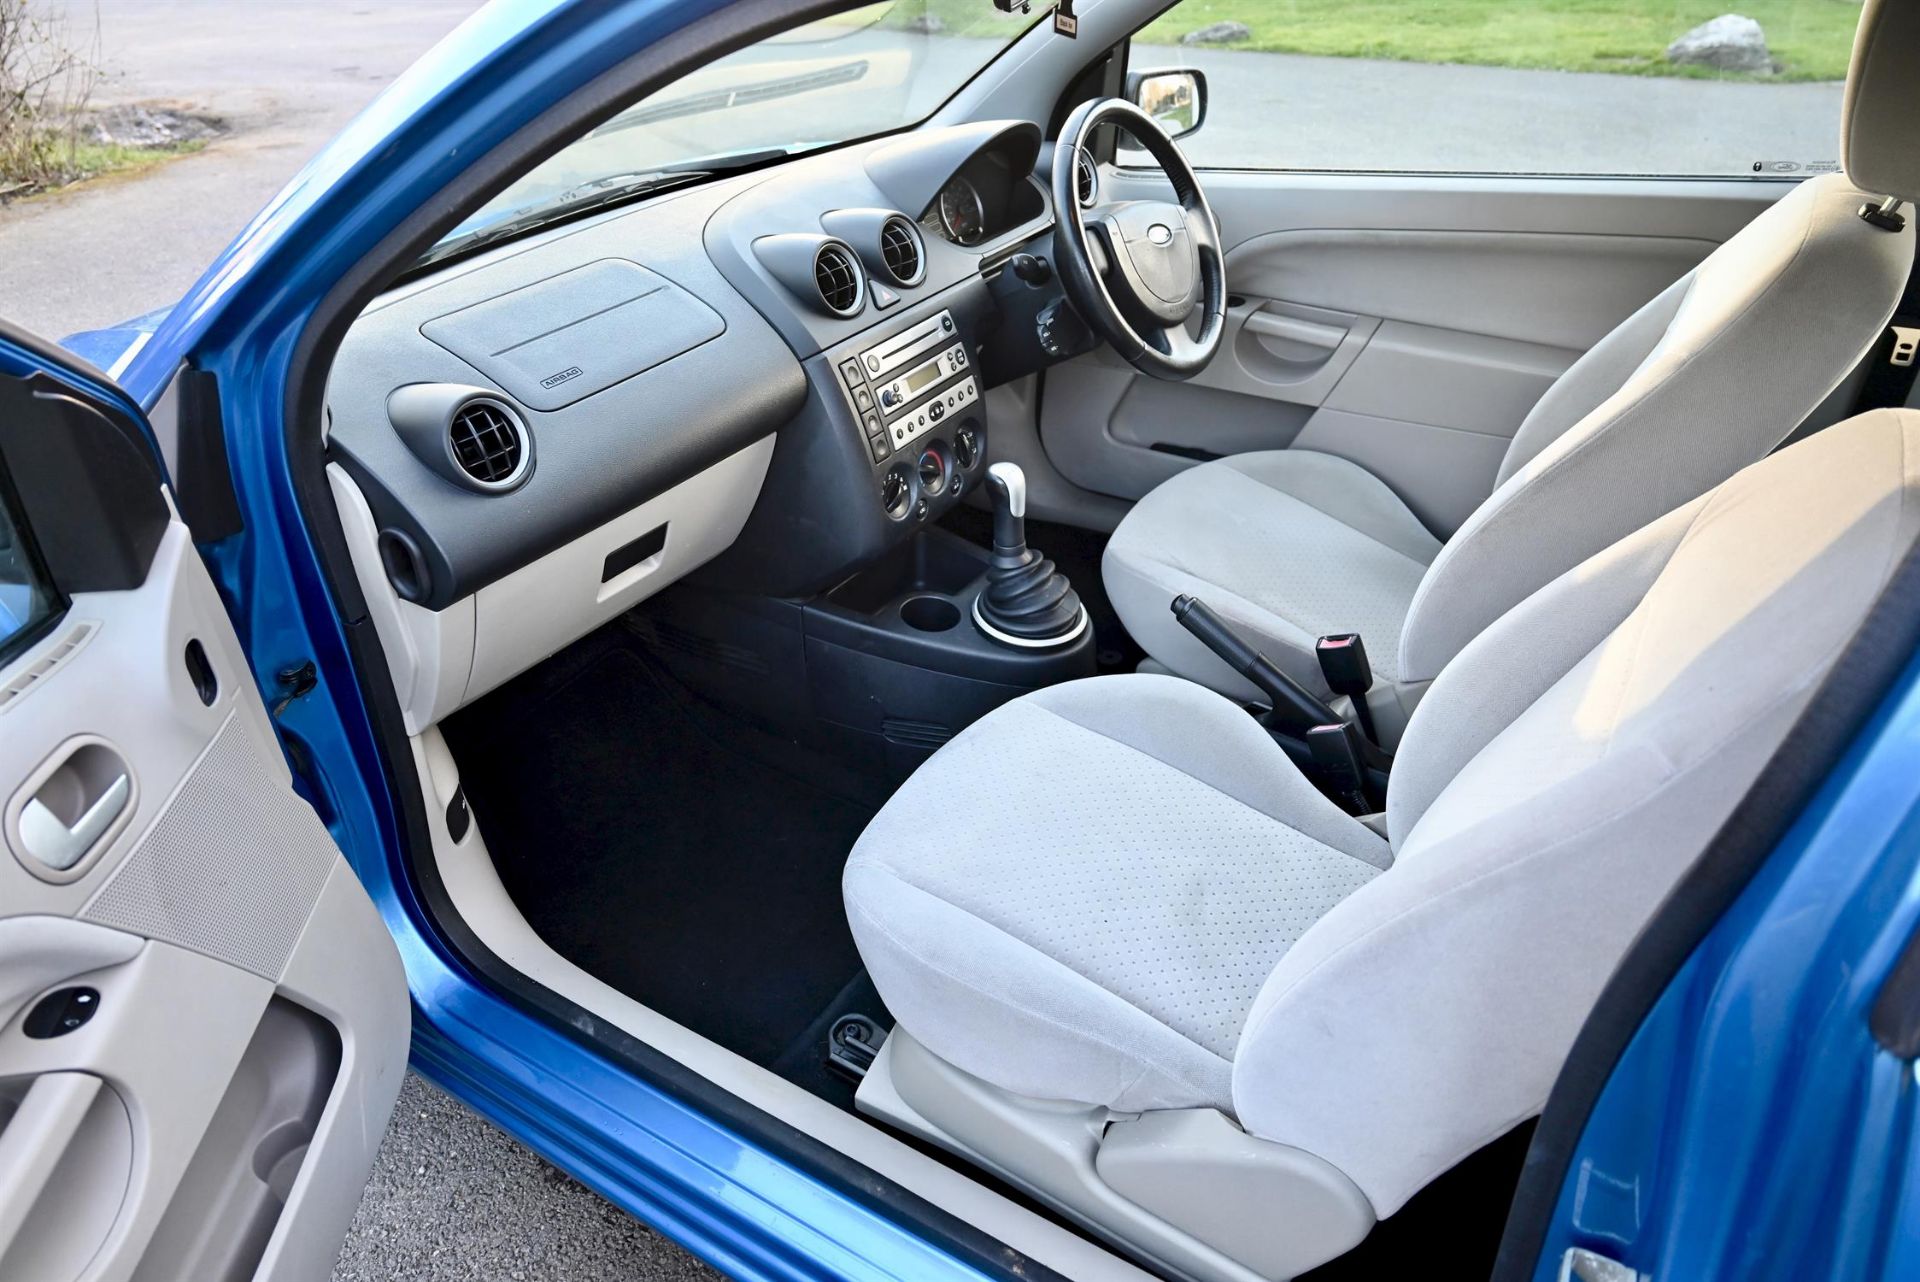 2004 Ford Fiesta 1.4 Ghia 3-door hatchback. Registration number: EO54 JNK. Metallic Aquarius Blue, - Image 9 of 16